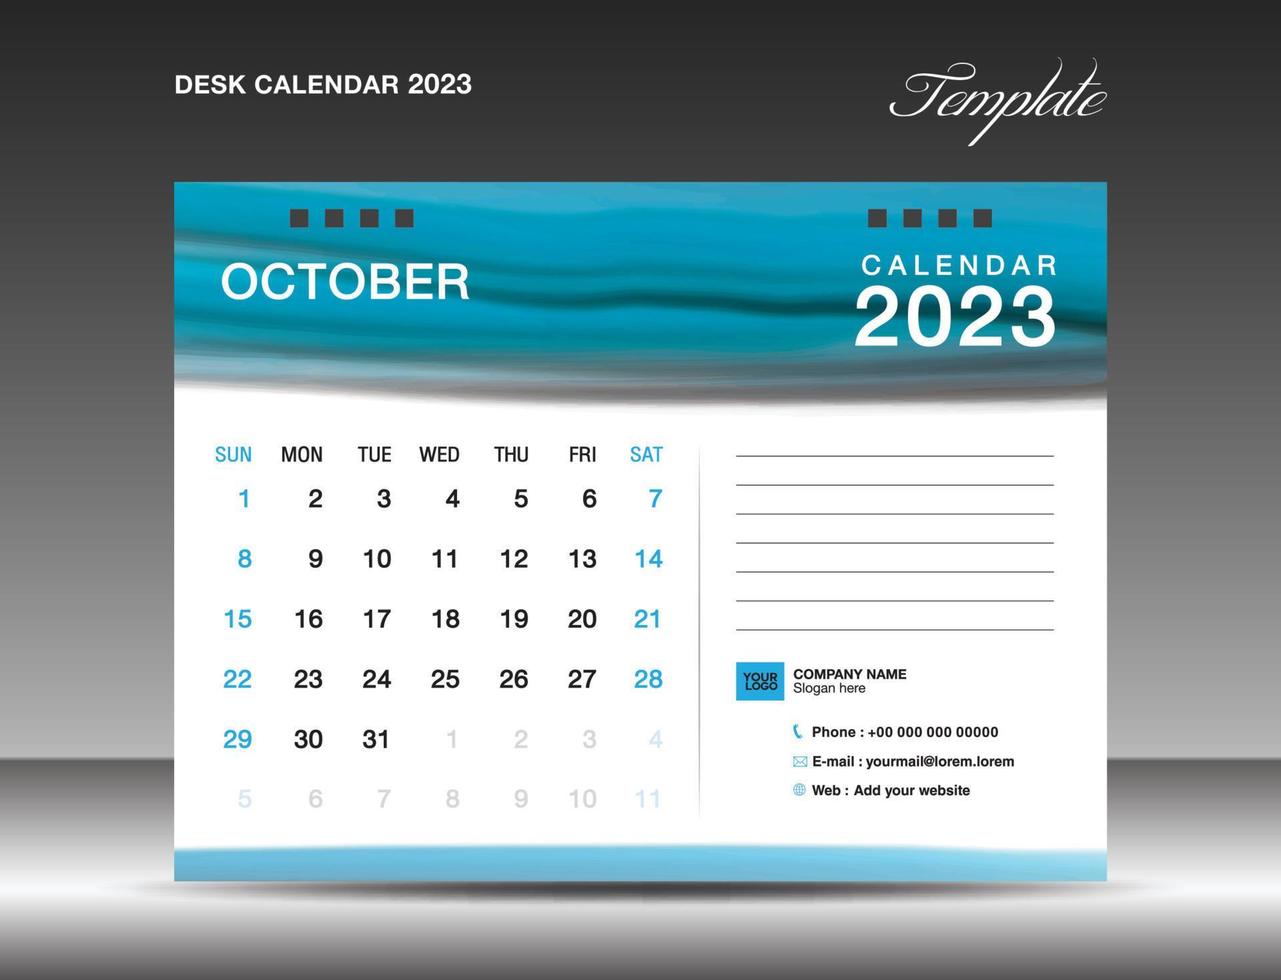 Tischkalender 2023 - Oktober 2023 Vorlage, Kalender 2023 Designvorlage, Planer, einfach, Wandkalenderdesign, Woche beginnt am Sonntag, Druck, Werbung, blauer Aquarellhintergrund, Vektor